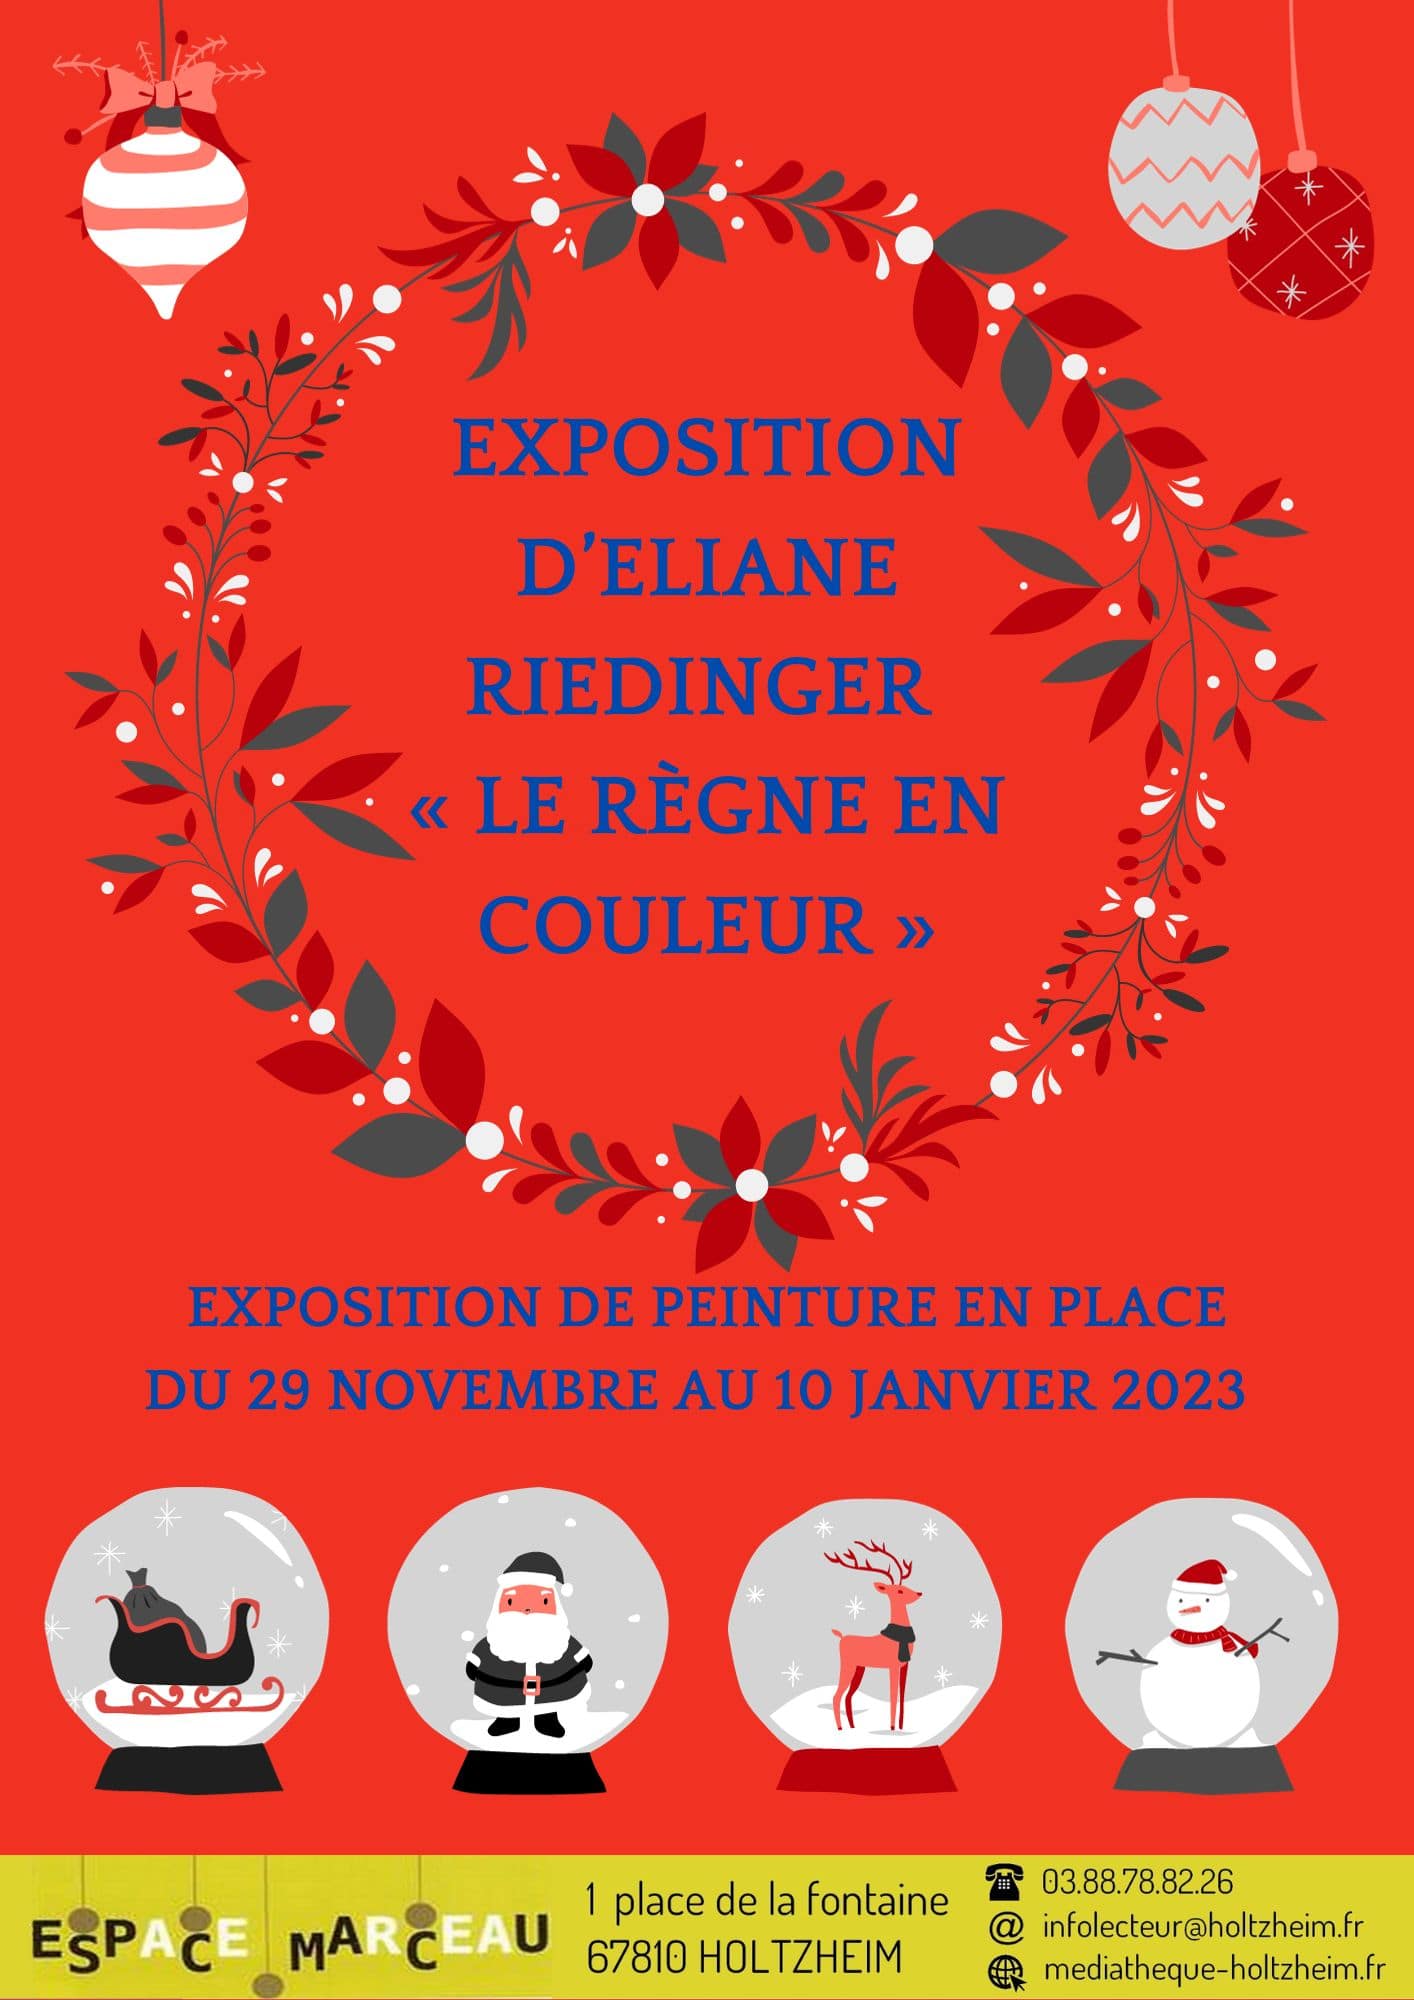 Affiche de l'exposition reprenant les informations mentionnées par écrit, sur le thème de Noël, avec un fond rouge, une couronne de fleurs, des boules de Noël.